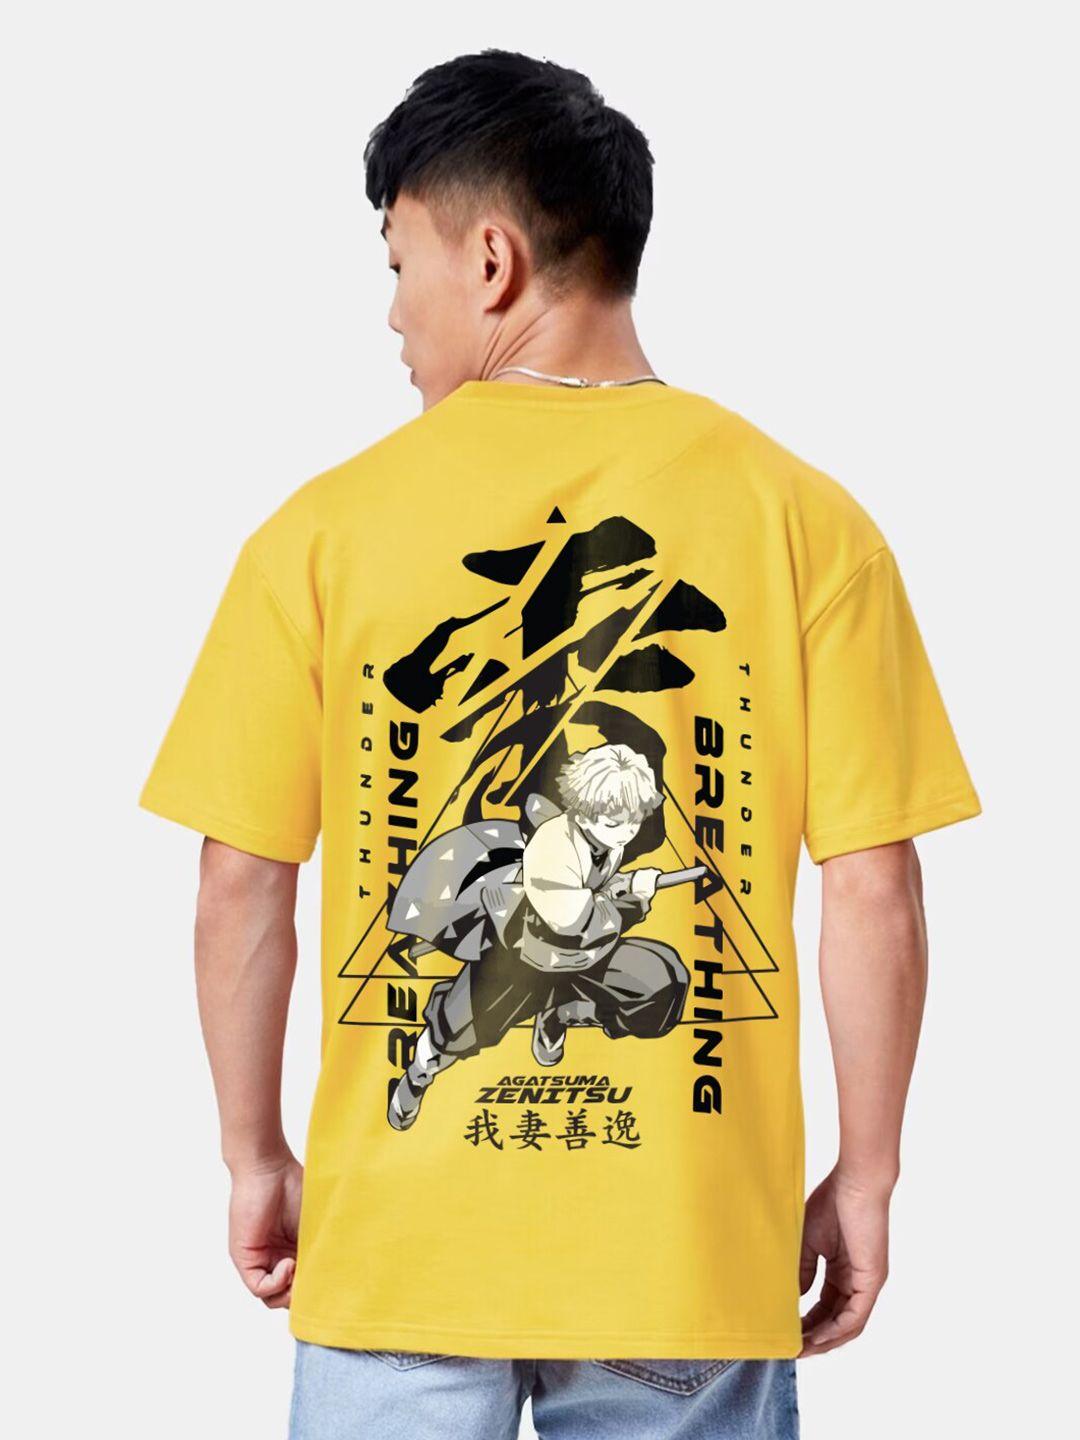 crazymonk unisex yellow printed t-shirt